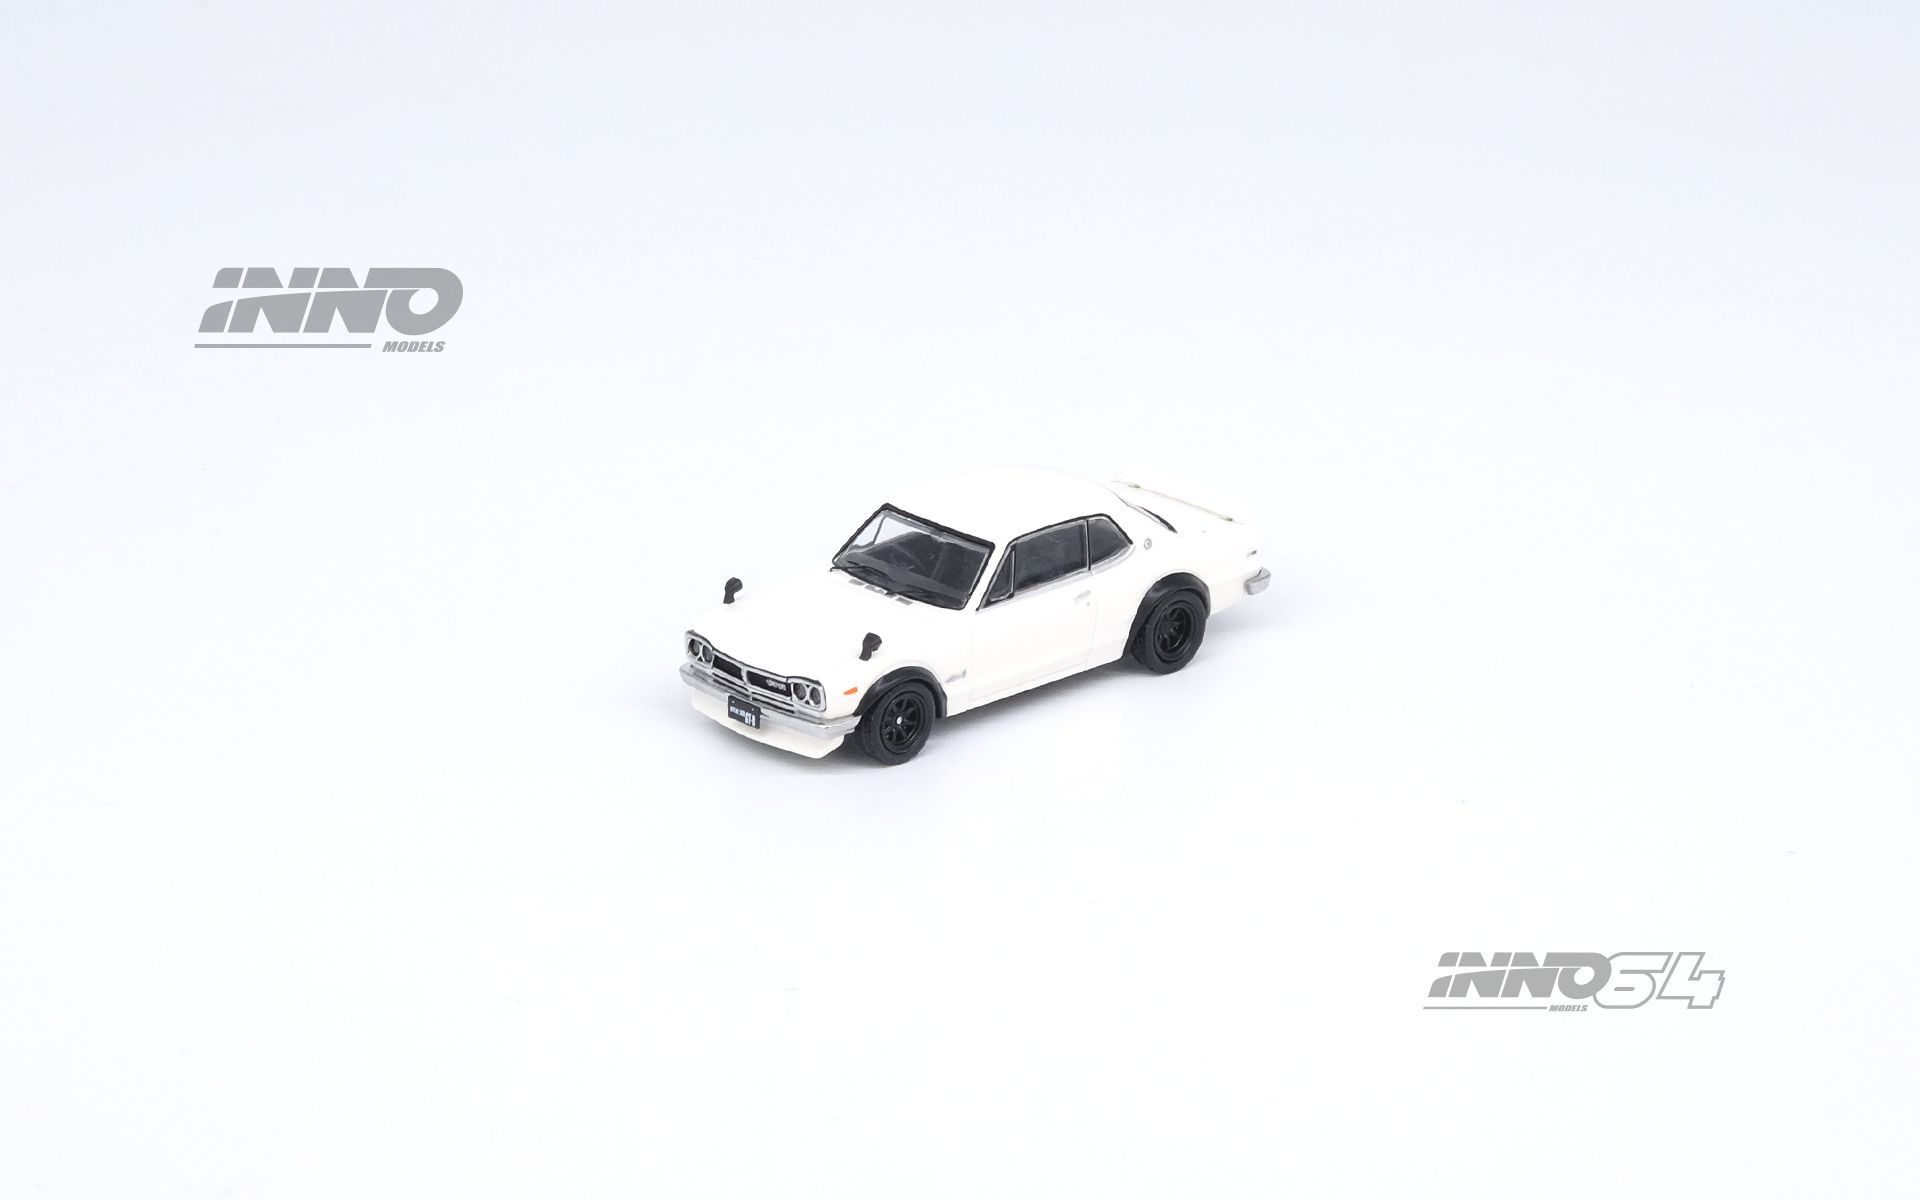  Mô hình xe ô tô Nissan skyline 2000 GT-R in white tỉ lệ 1:64 Inno64 model 